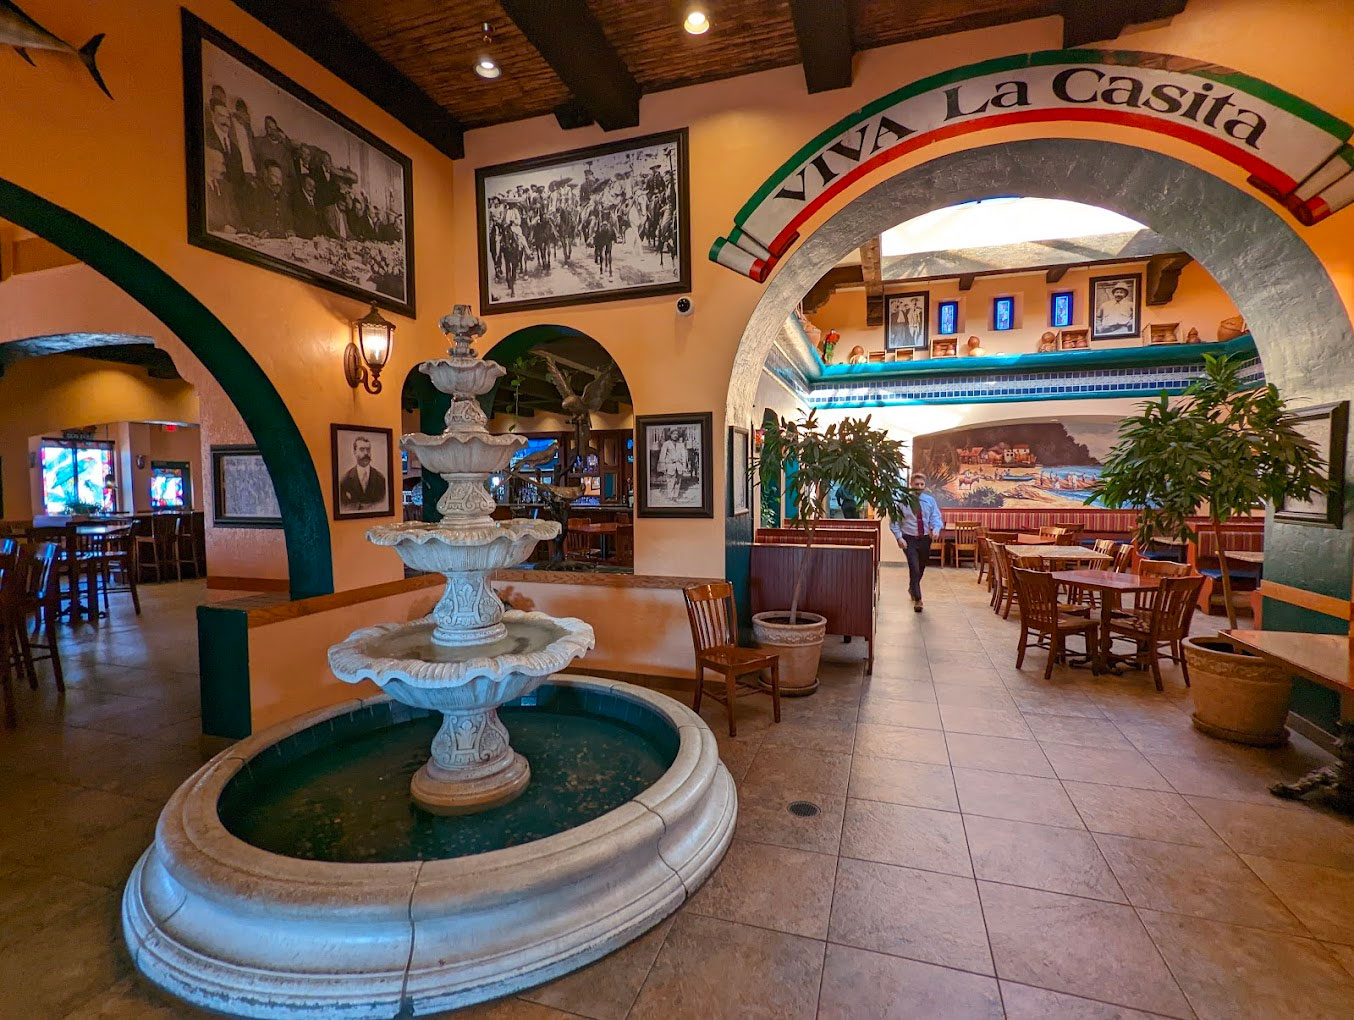 Interior photo of La Casita restaurant in Roseville.